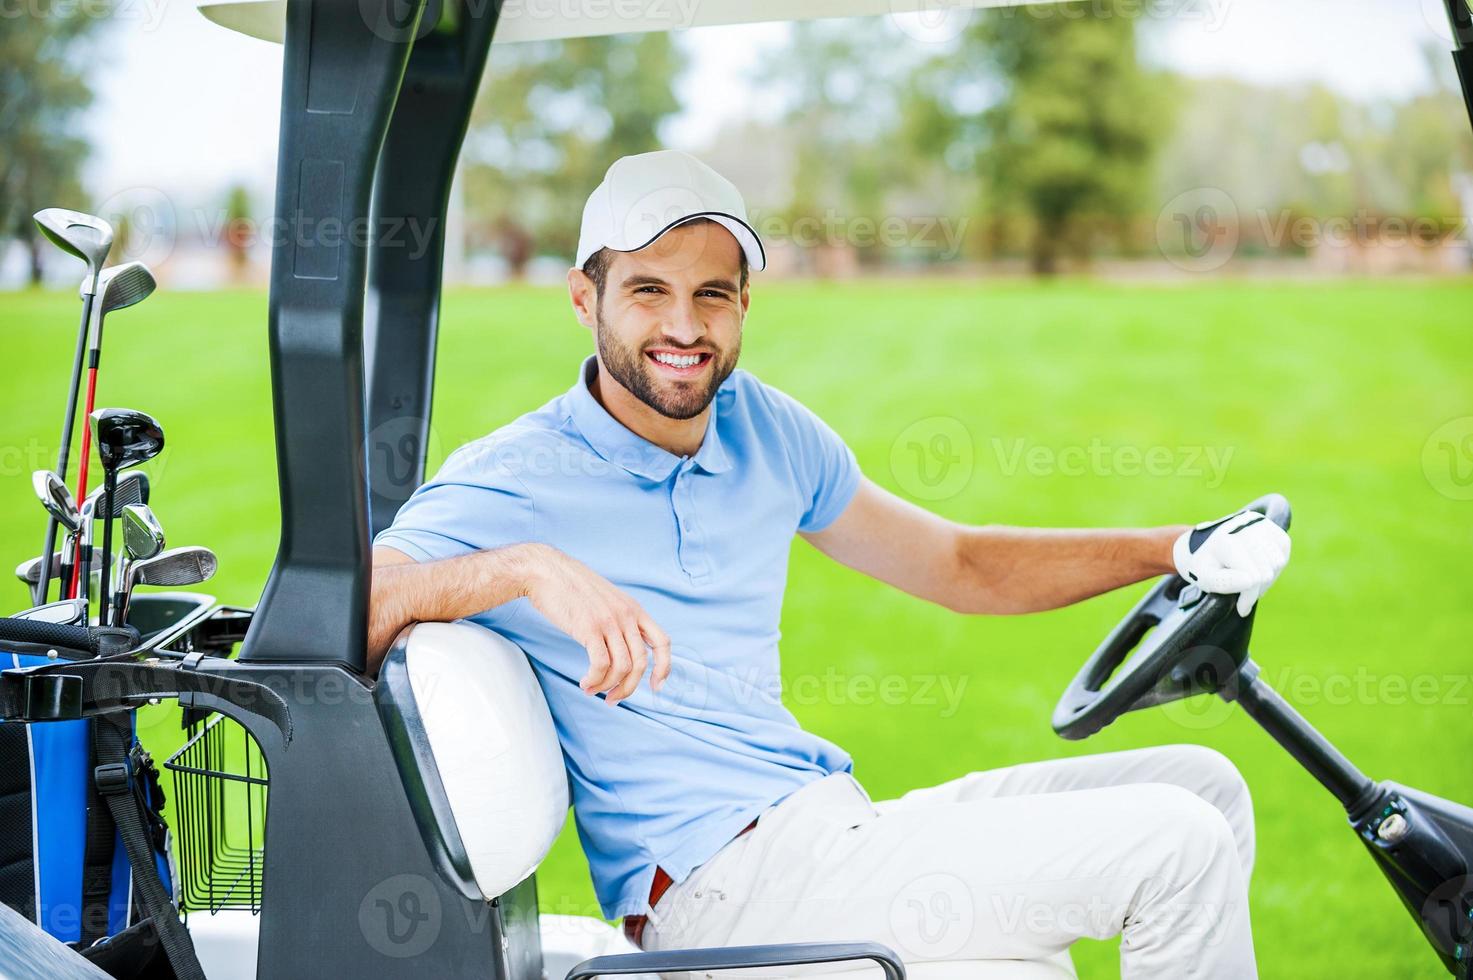 sur mon chemin vers le prochain trou. vue latérale d'un jeune golfeur masculin heureux conduisant une voiturette de golf et regardant la caméra photo